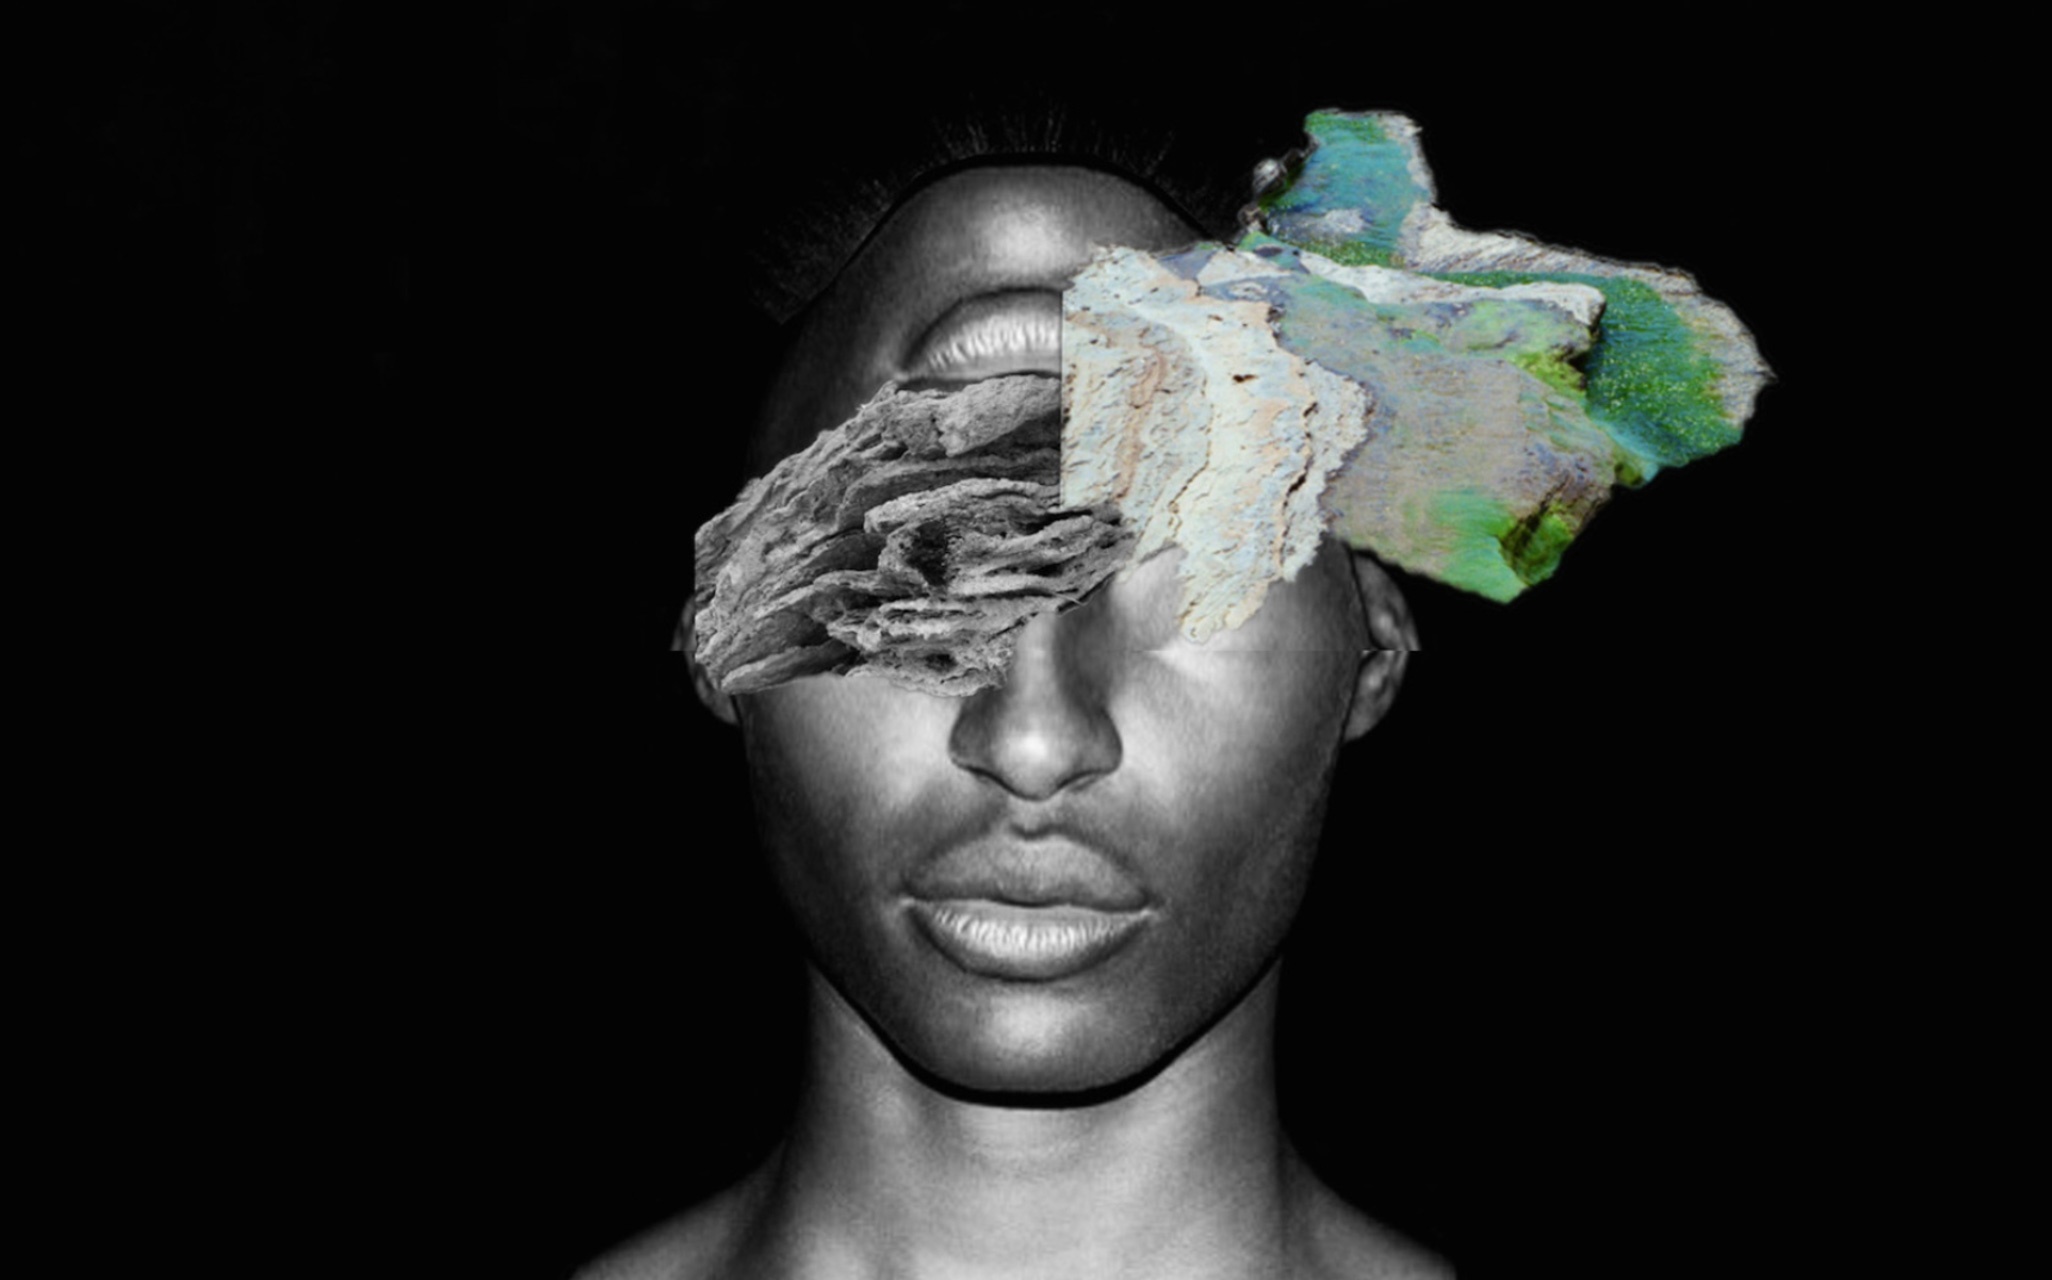 Africa 2180: Futuristic Mech and Concept Art – African Digital Art